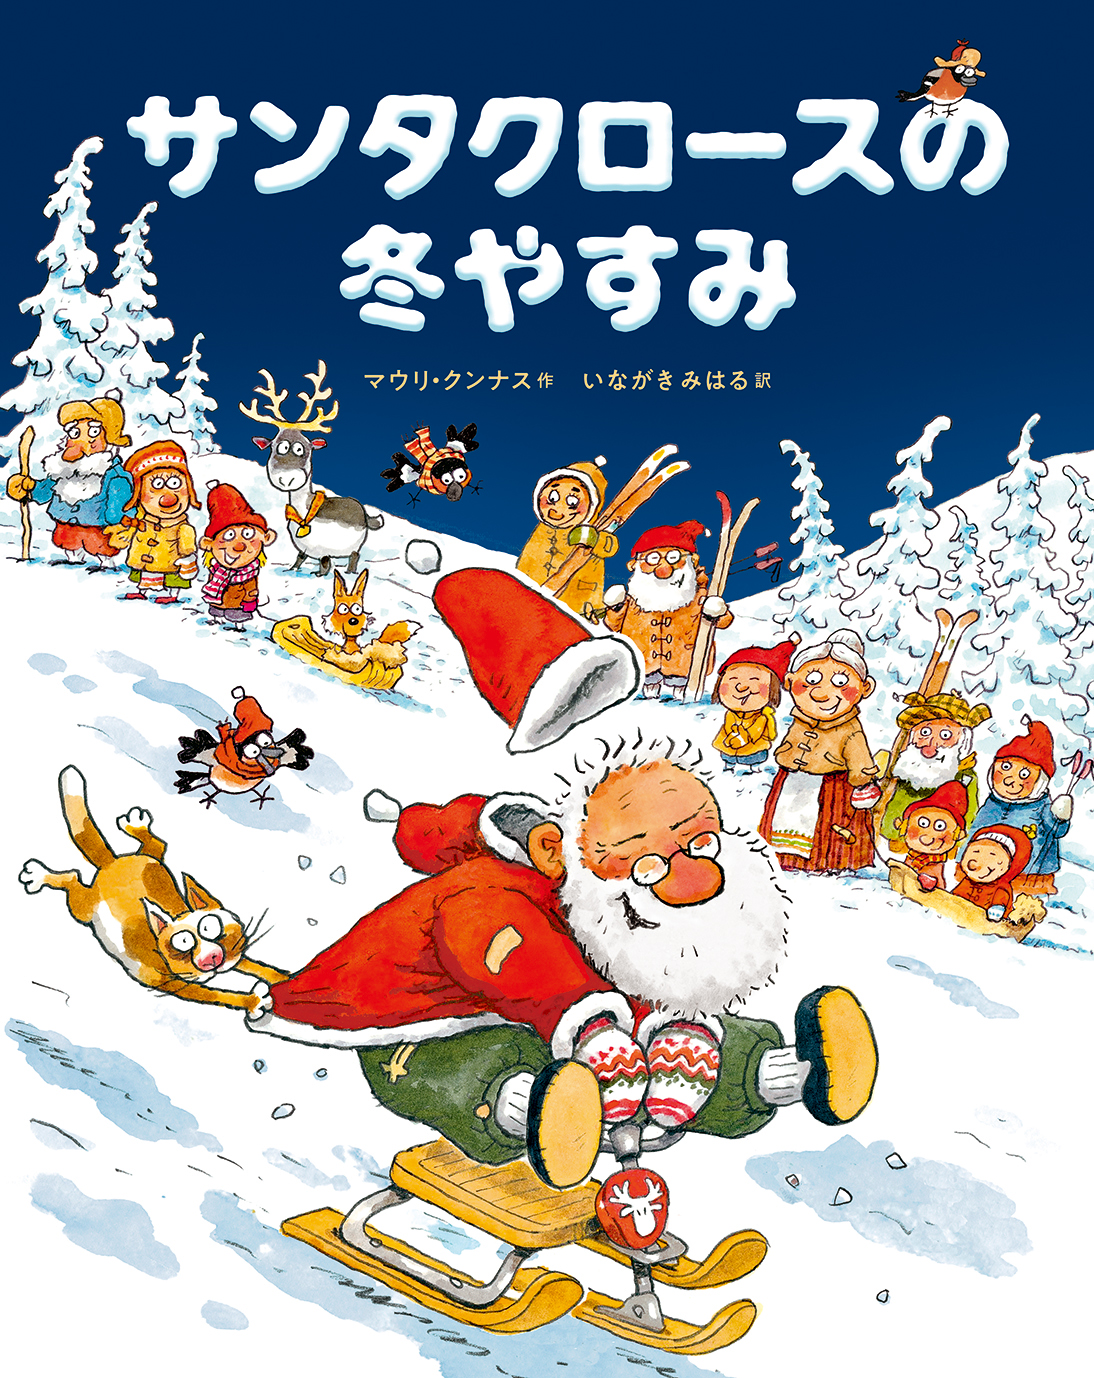 12/10ラジオ日本で『サンタクロースと小人たち』『サンタクロースの冬やすみ』が紹介されました